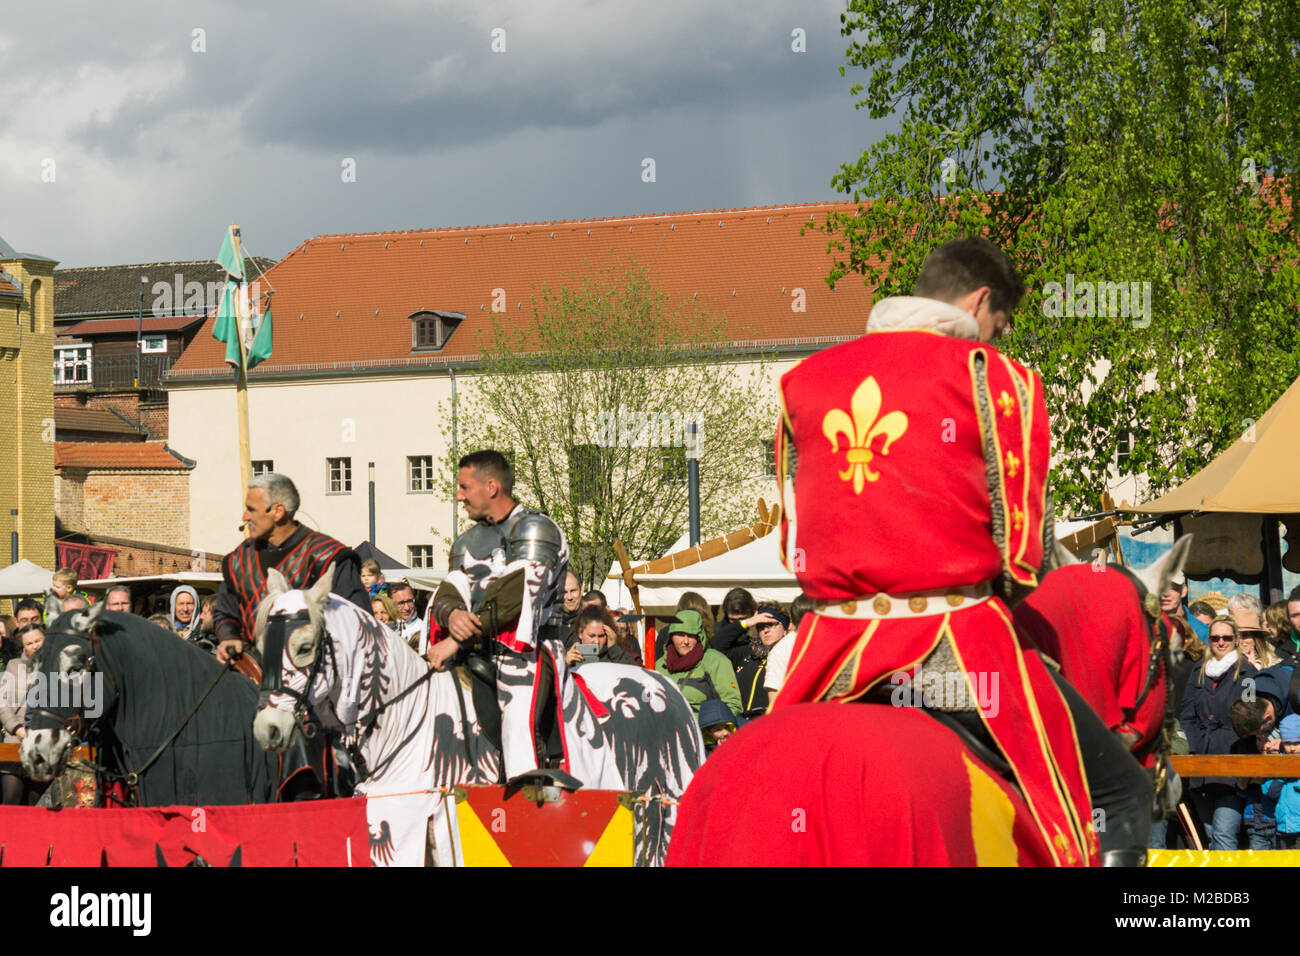 Acteurs qui jouent l'soldat dans une compétition durant une fête médiévale avec beaucoup d'audience en Allemagne Banque D'Images